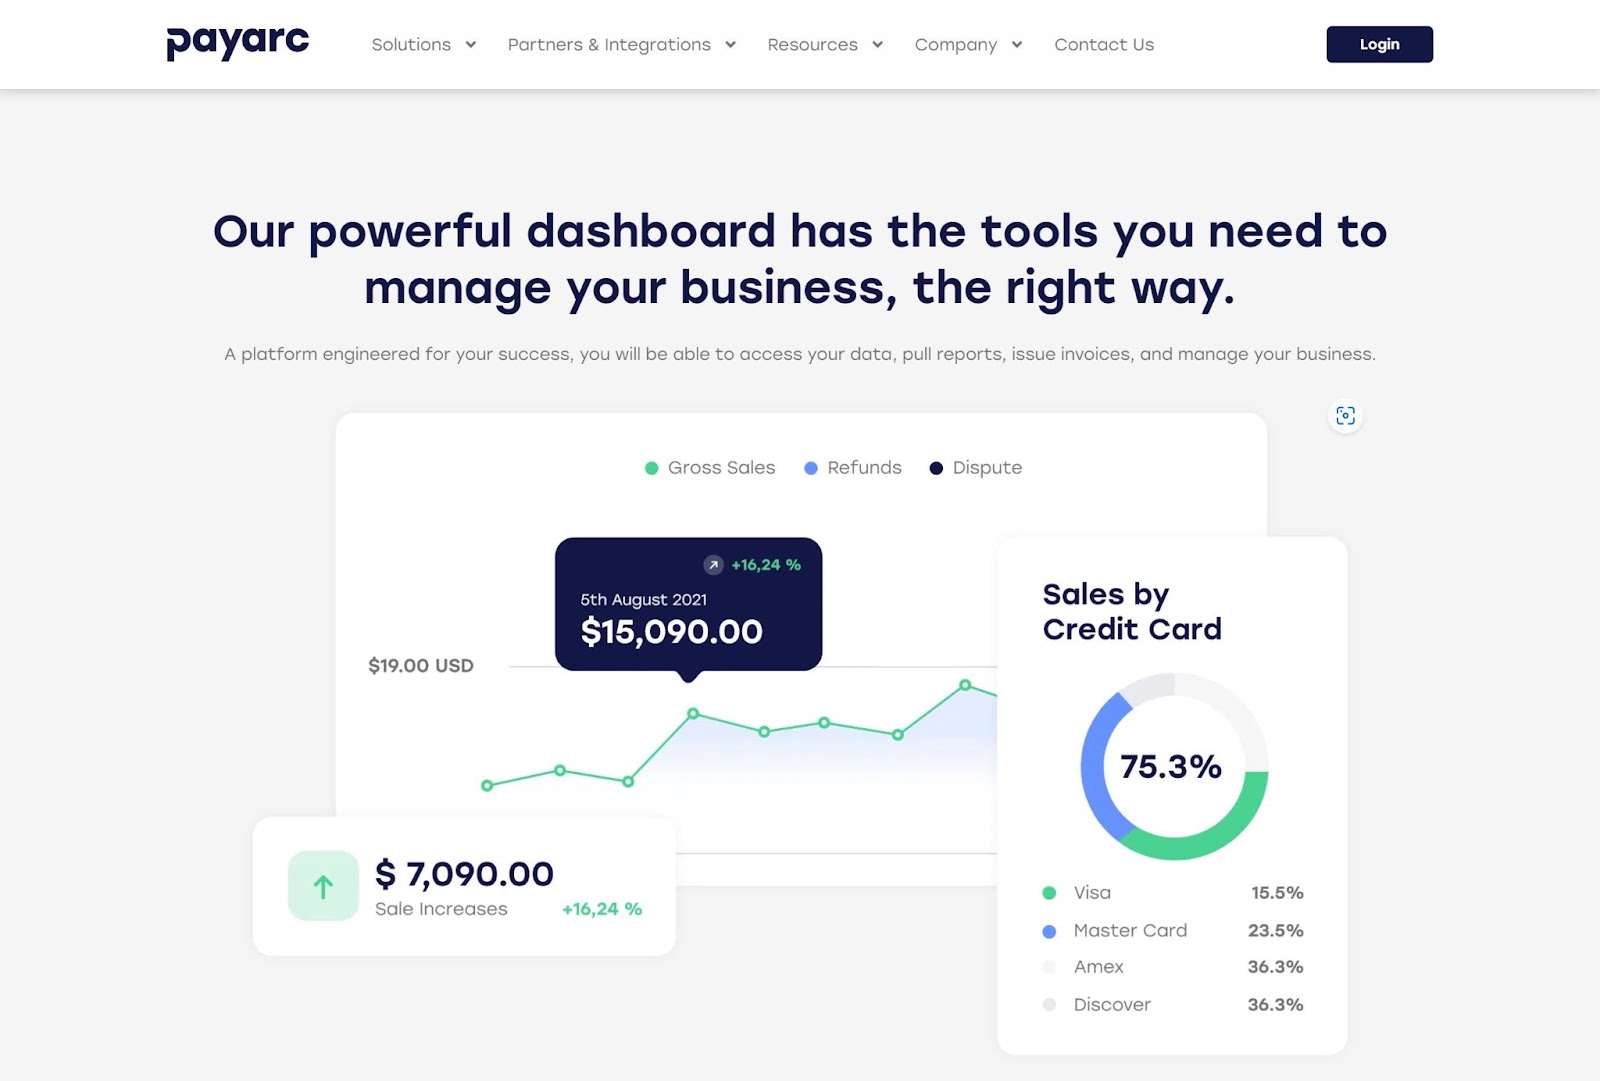 PayArc dashboard sales data.